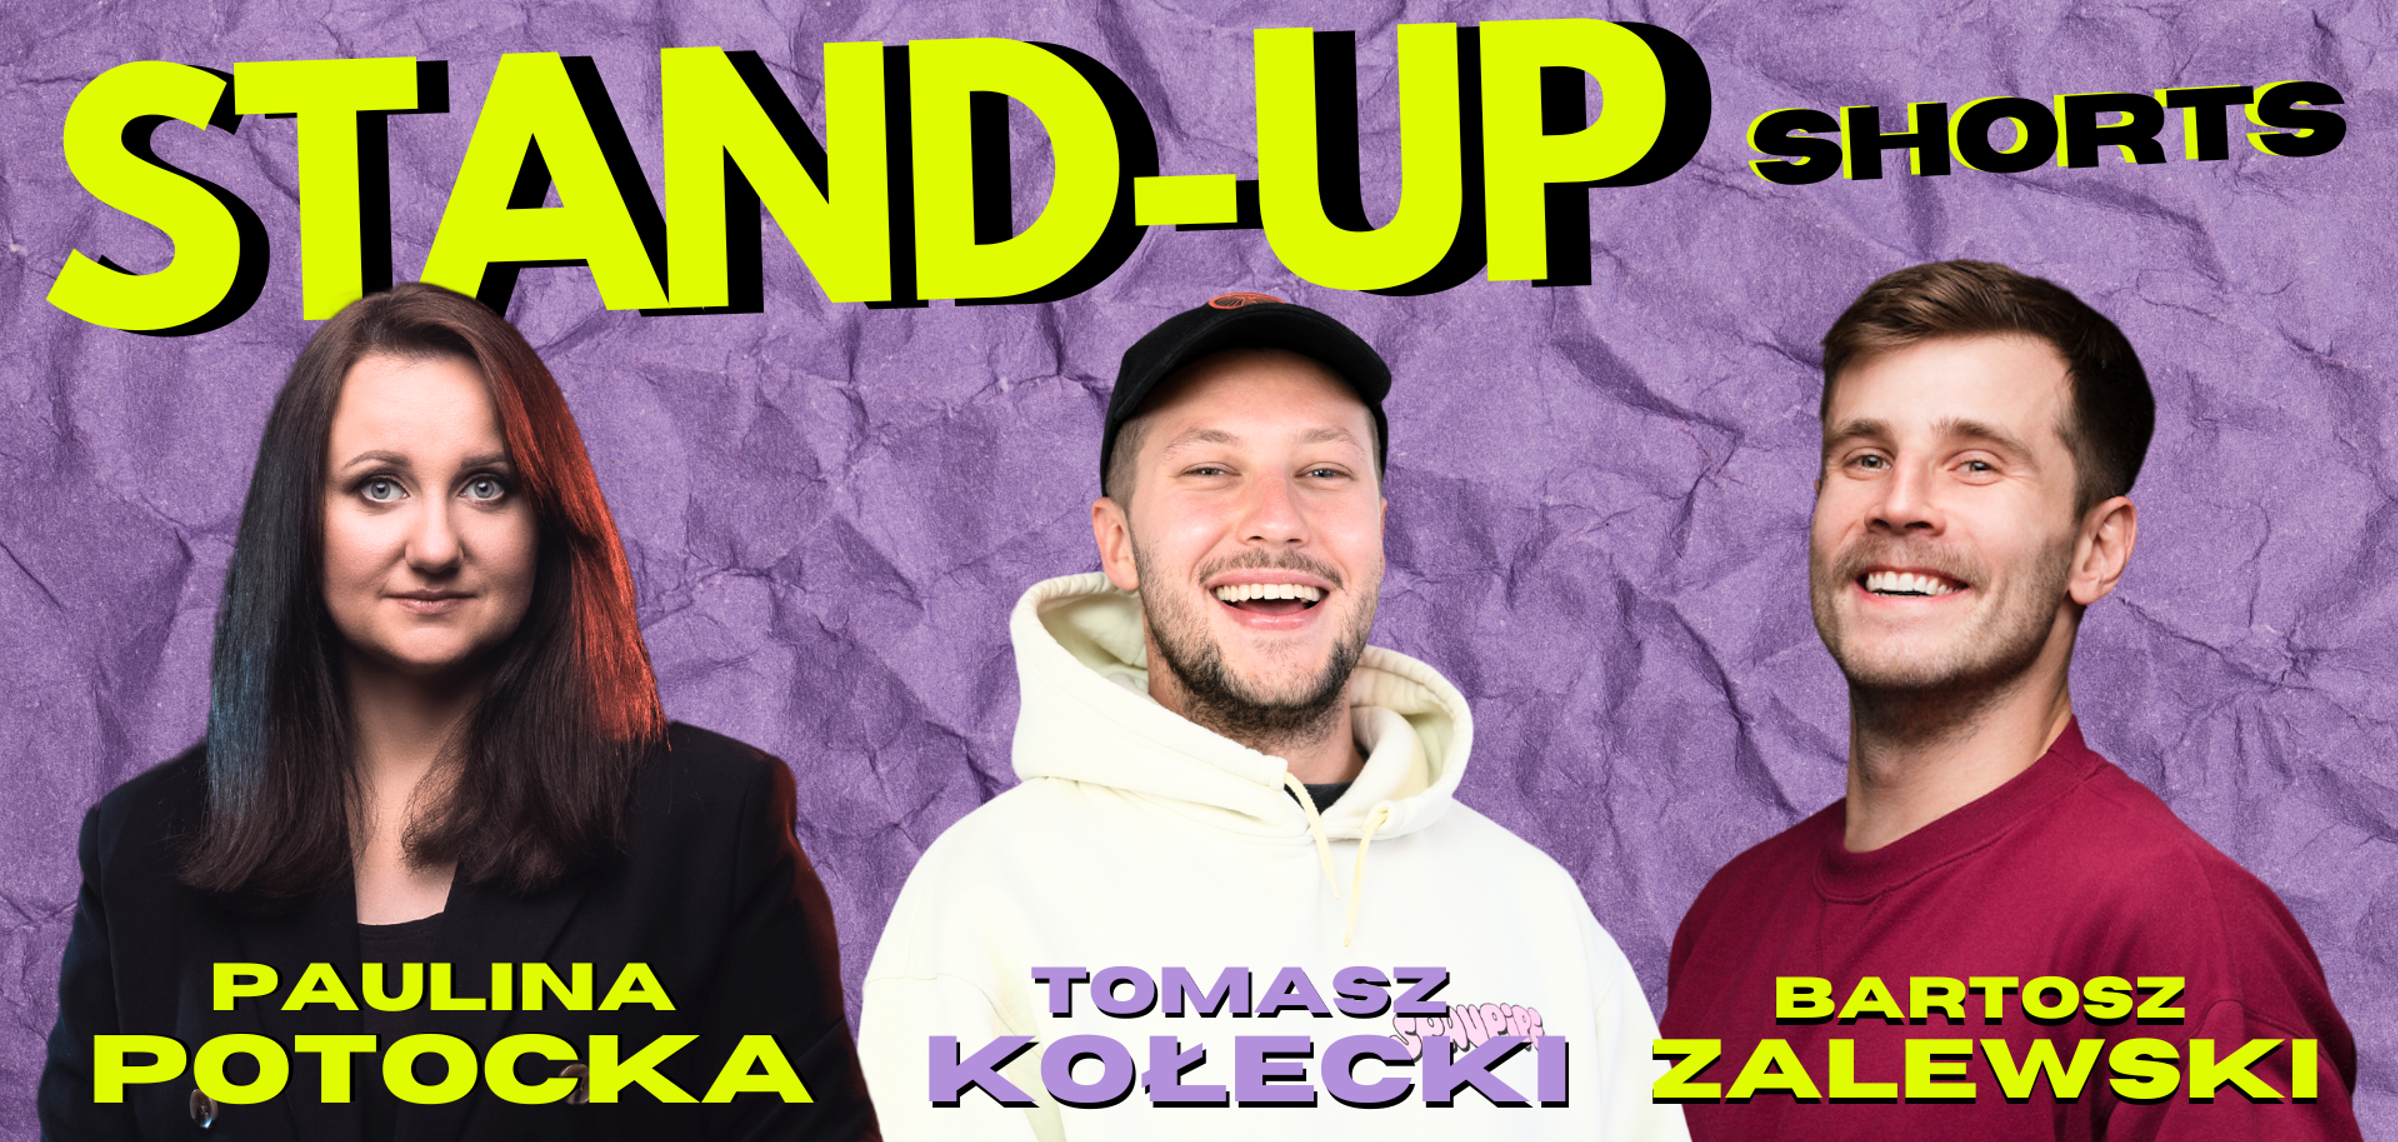 Stand-up Shorts: Kołecki, Potocka, Zalewski